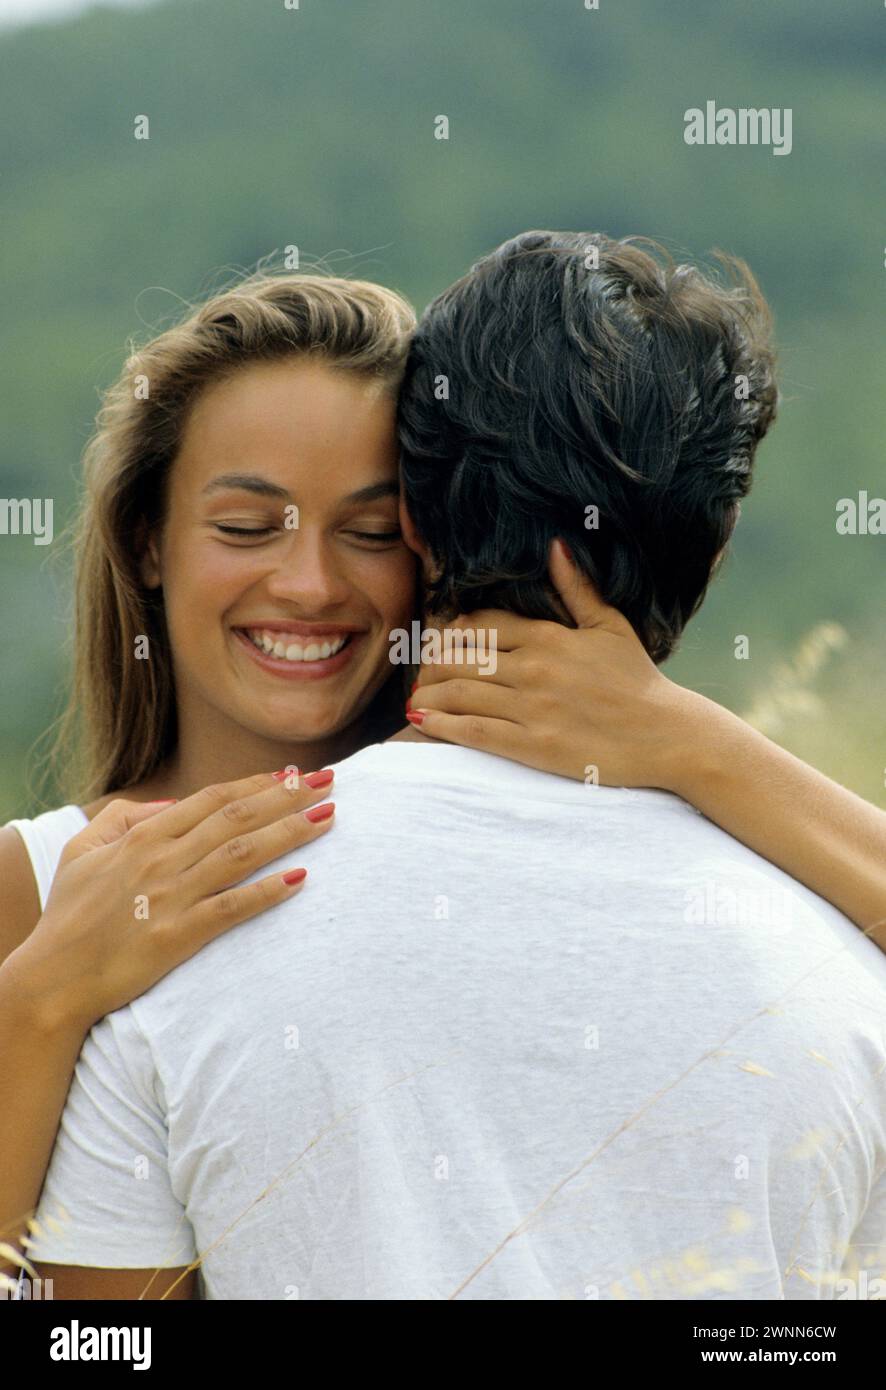 joli jeune couple portrait amoureux expression bonheur avec t-shirt blanc champ de paille très romantique et expressif en arrière-plan Banque D'Images